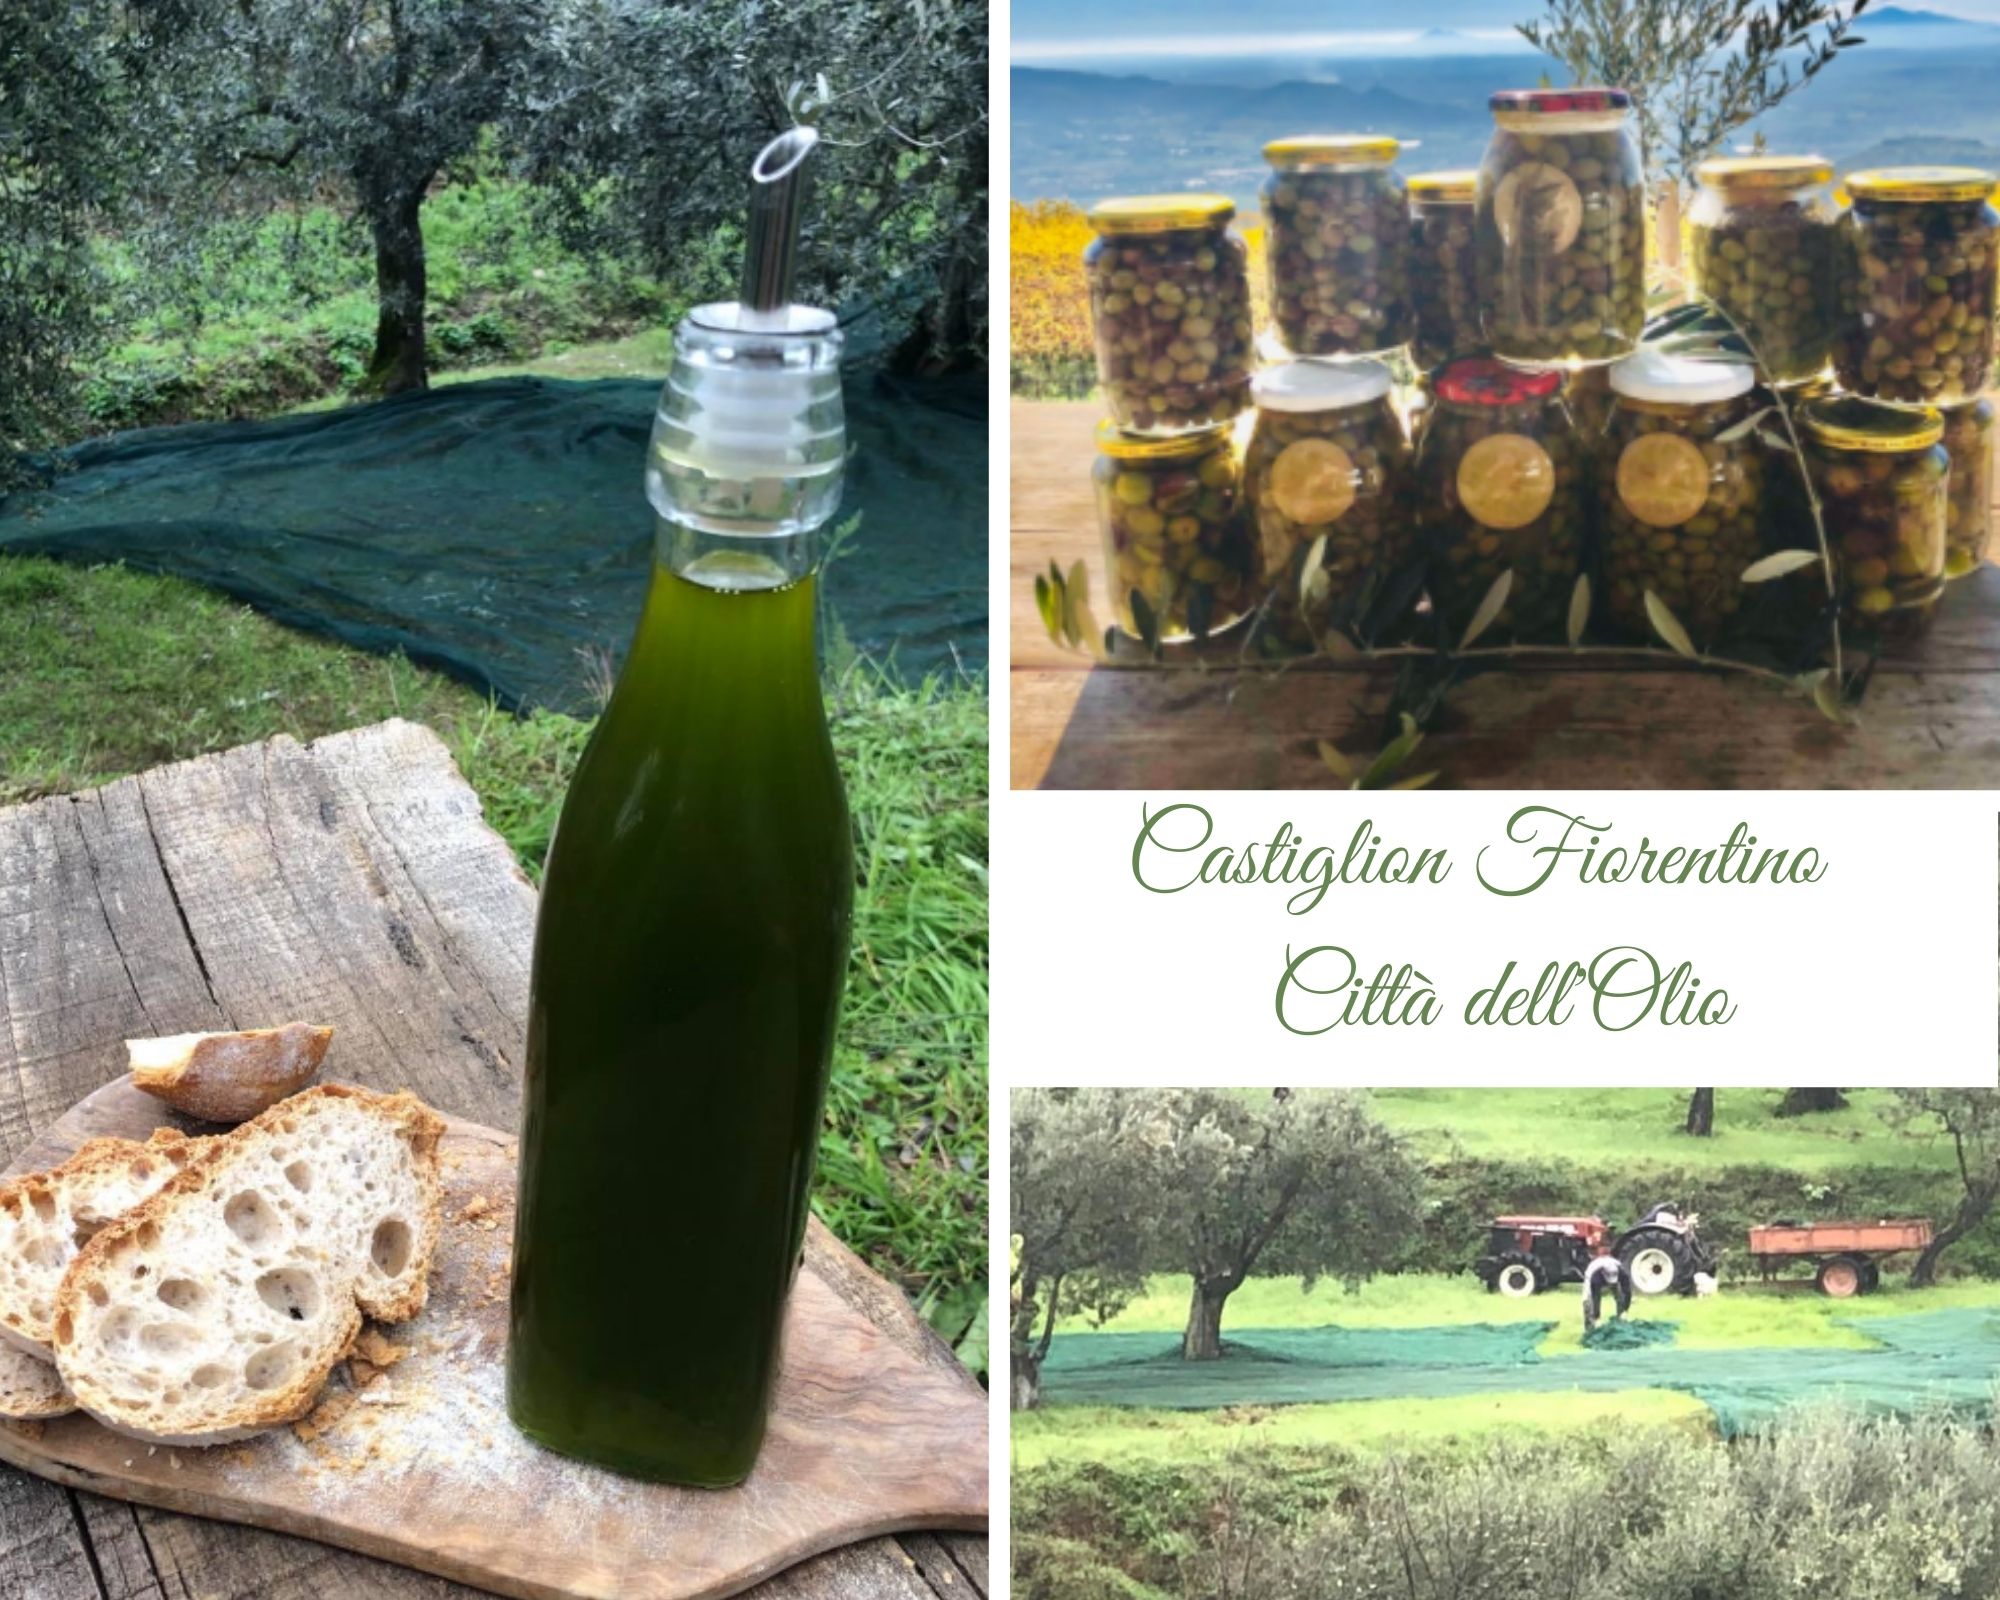 L’olio di oliva a Castiglion Fiorentino: fra tradizione e innovazione